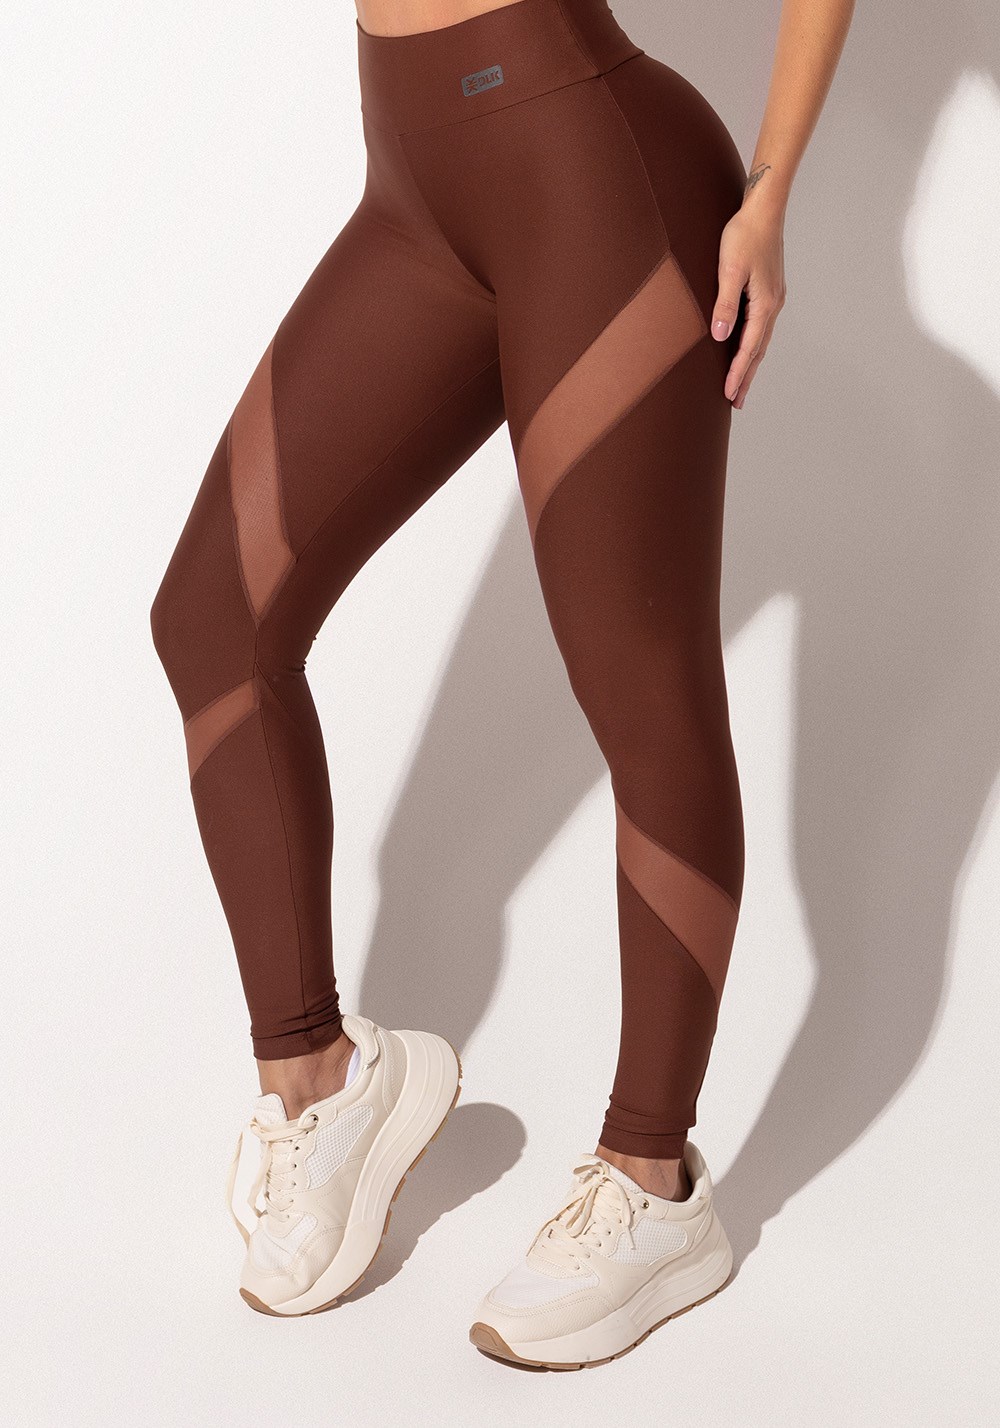 Legging fitness feminina marrom com recortes em tule intense